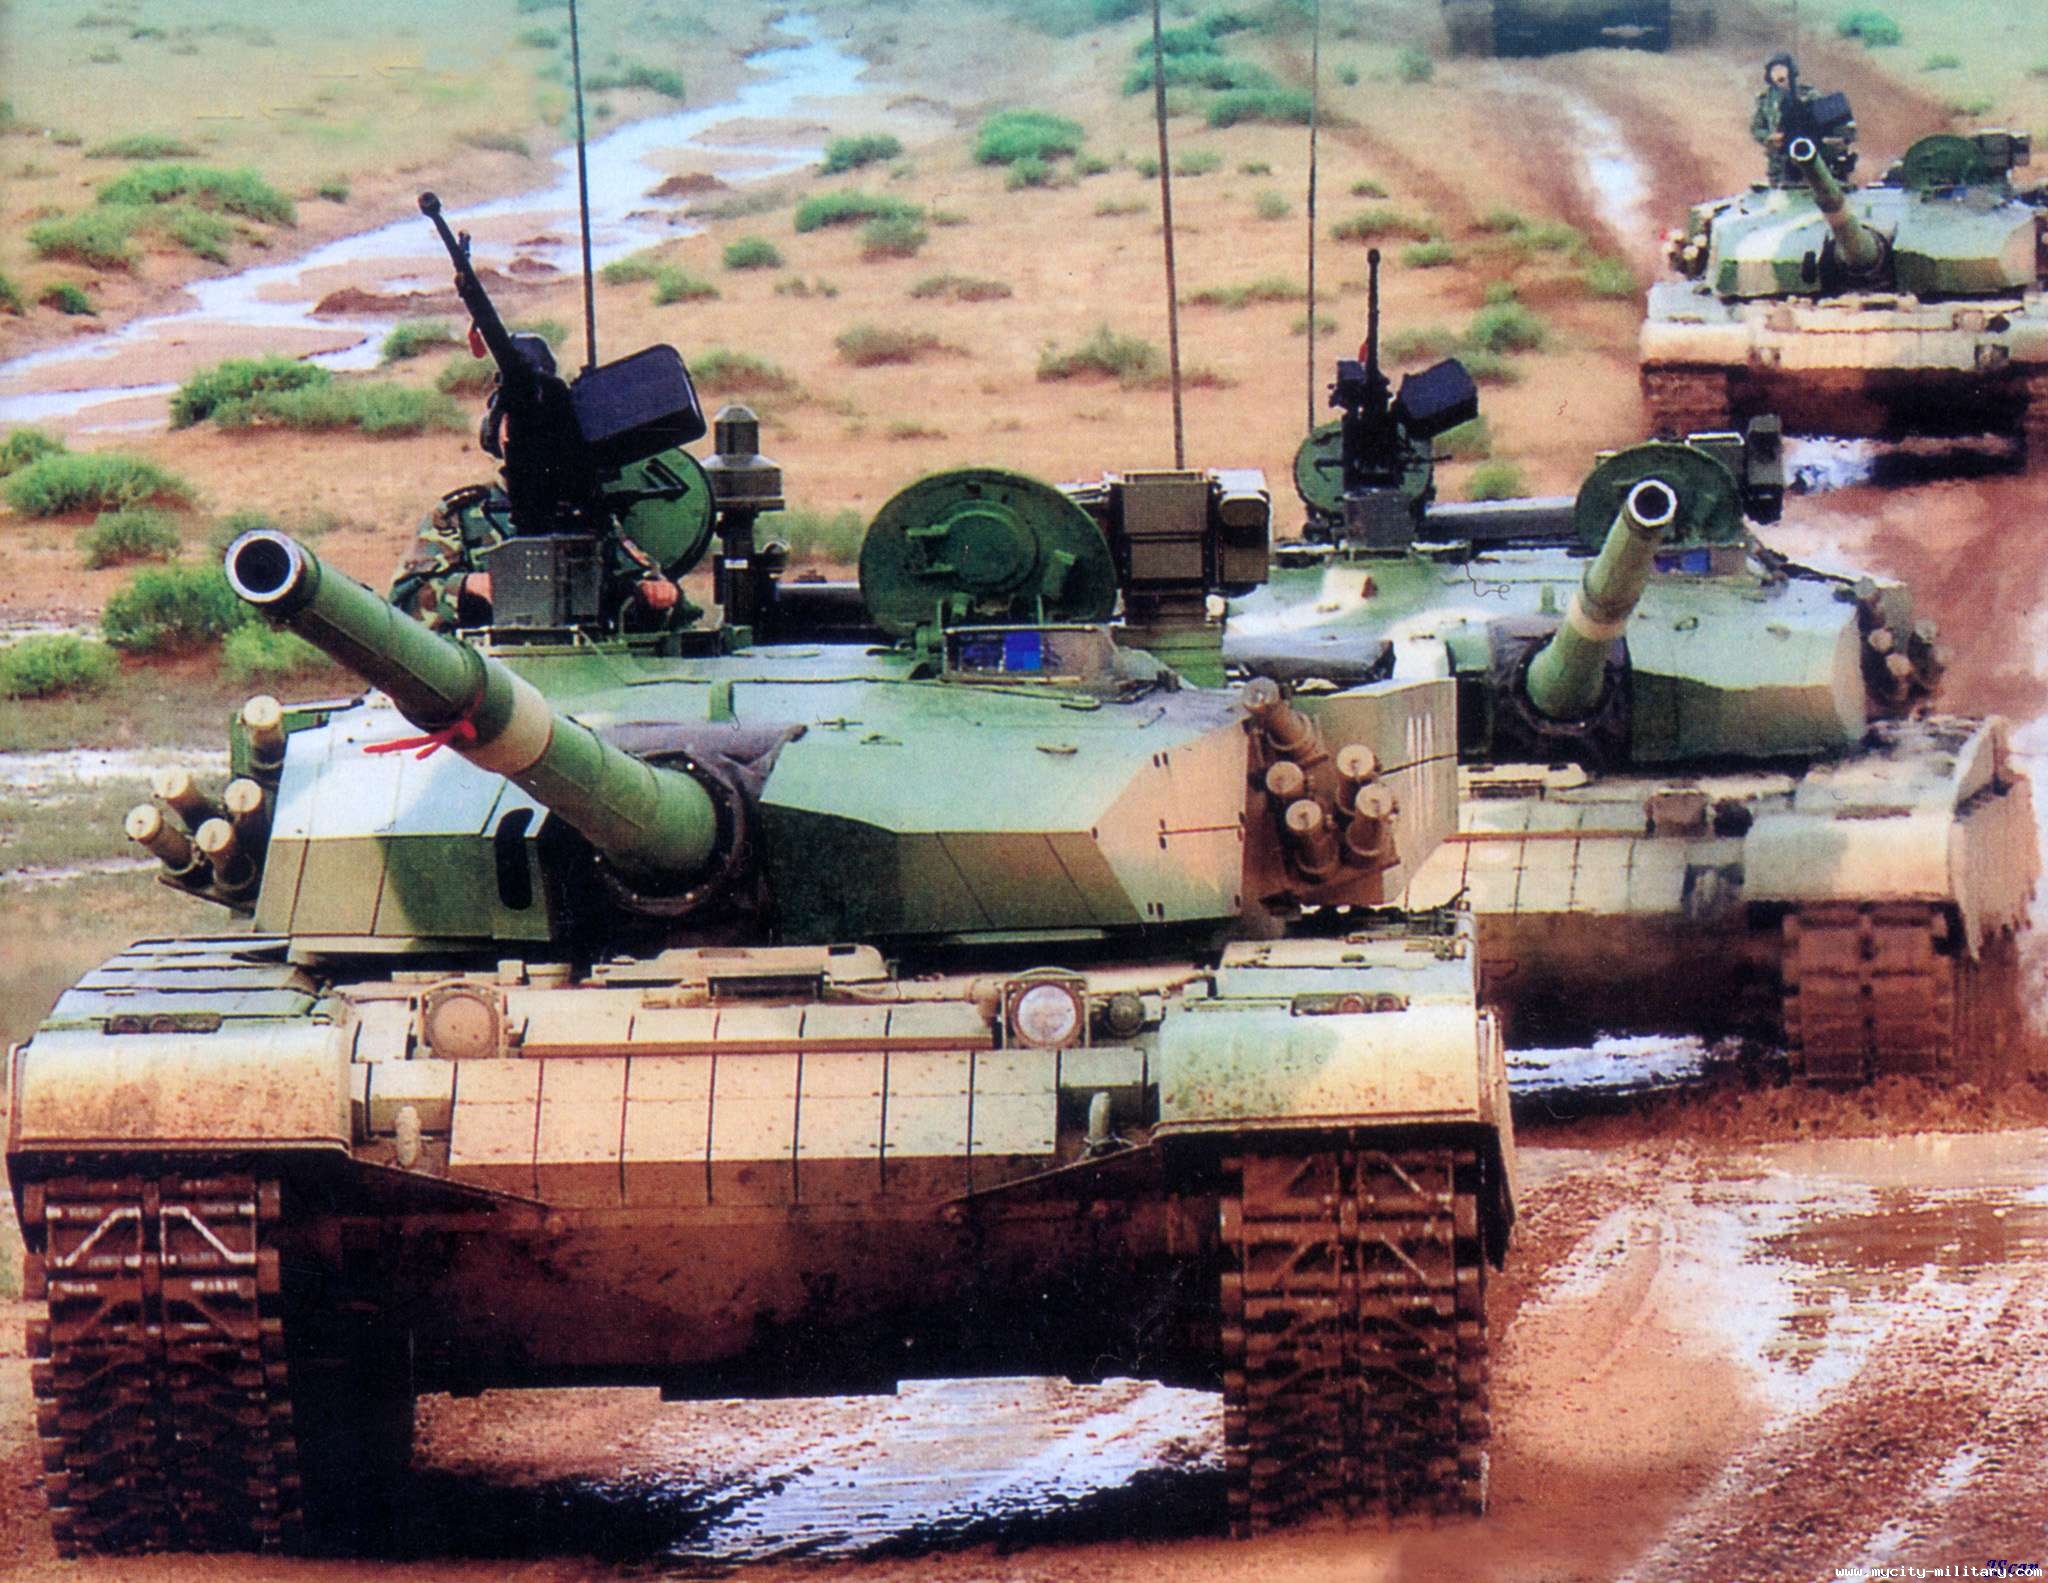 Ztz 99. Китайский танк ZTZ 99a. Type 99 танк. Китайский танк Type 99. Type 99 (ZTZ-99).